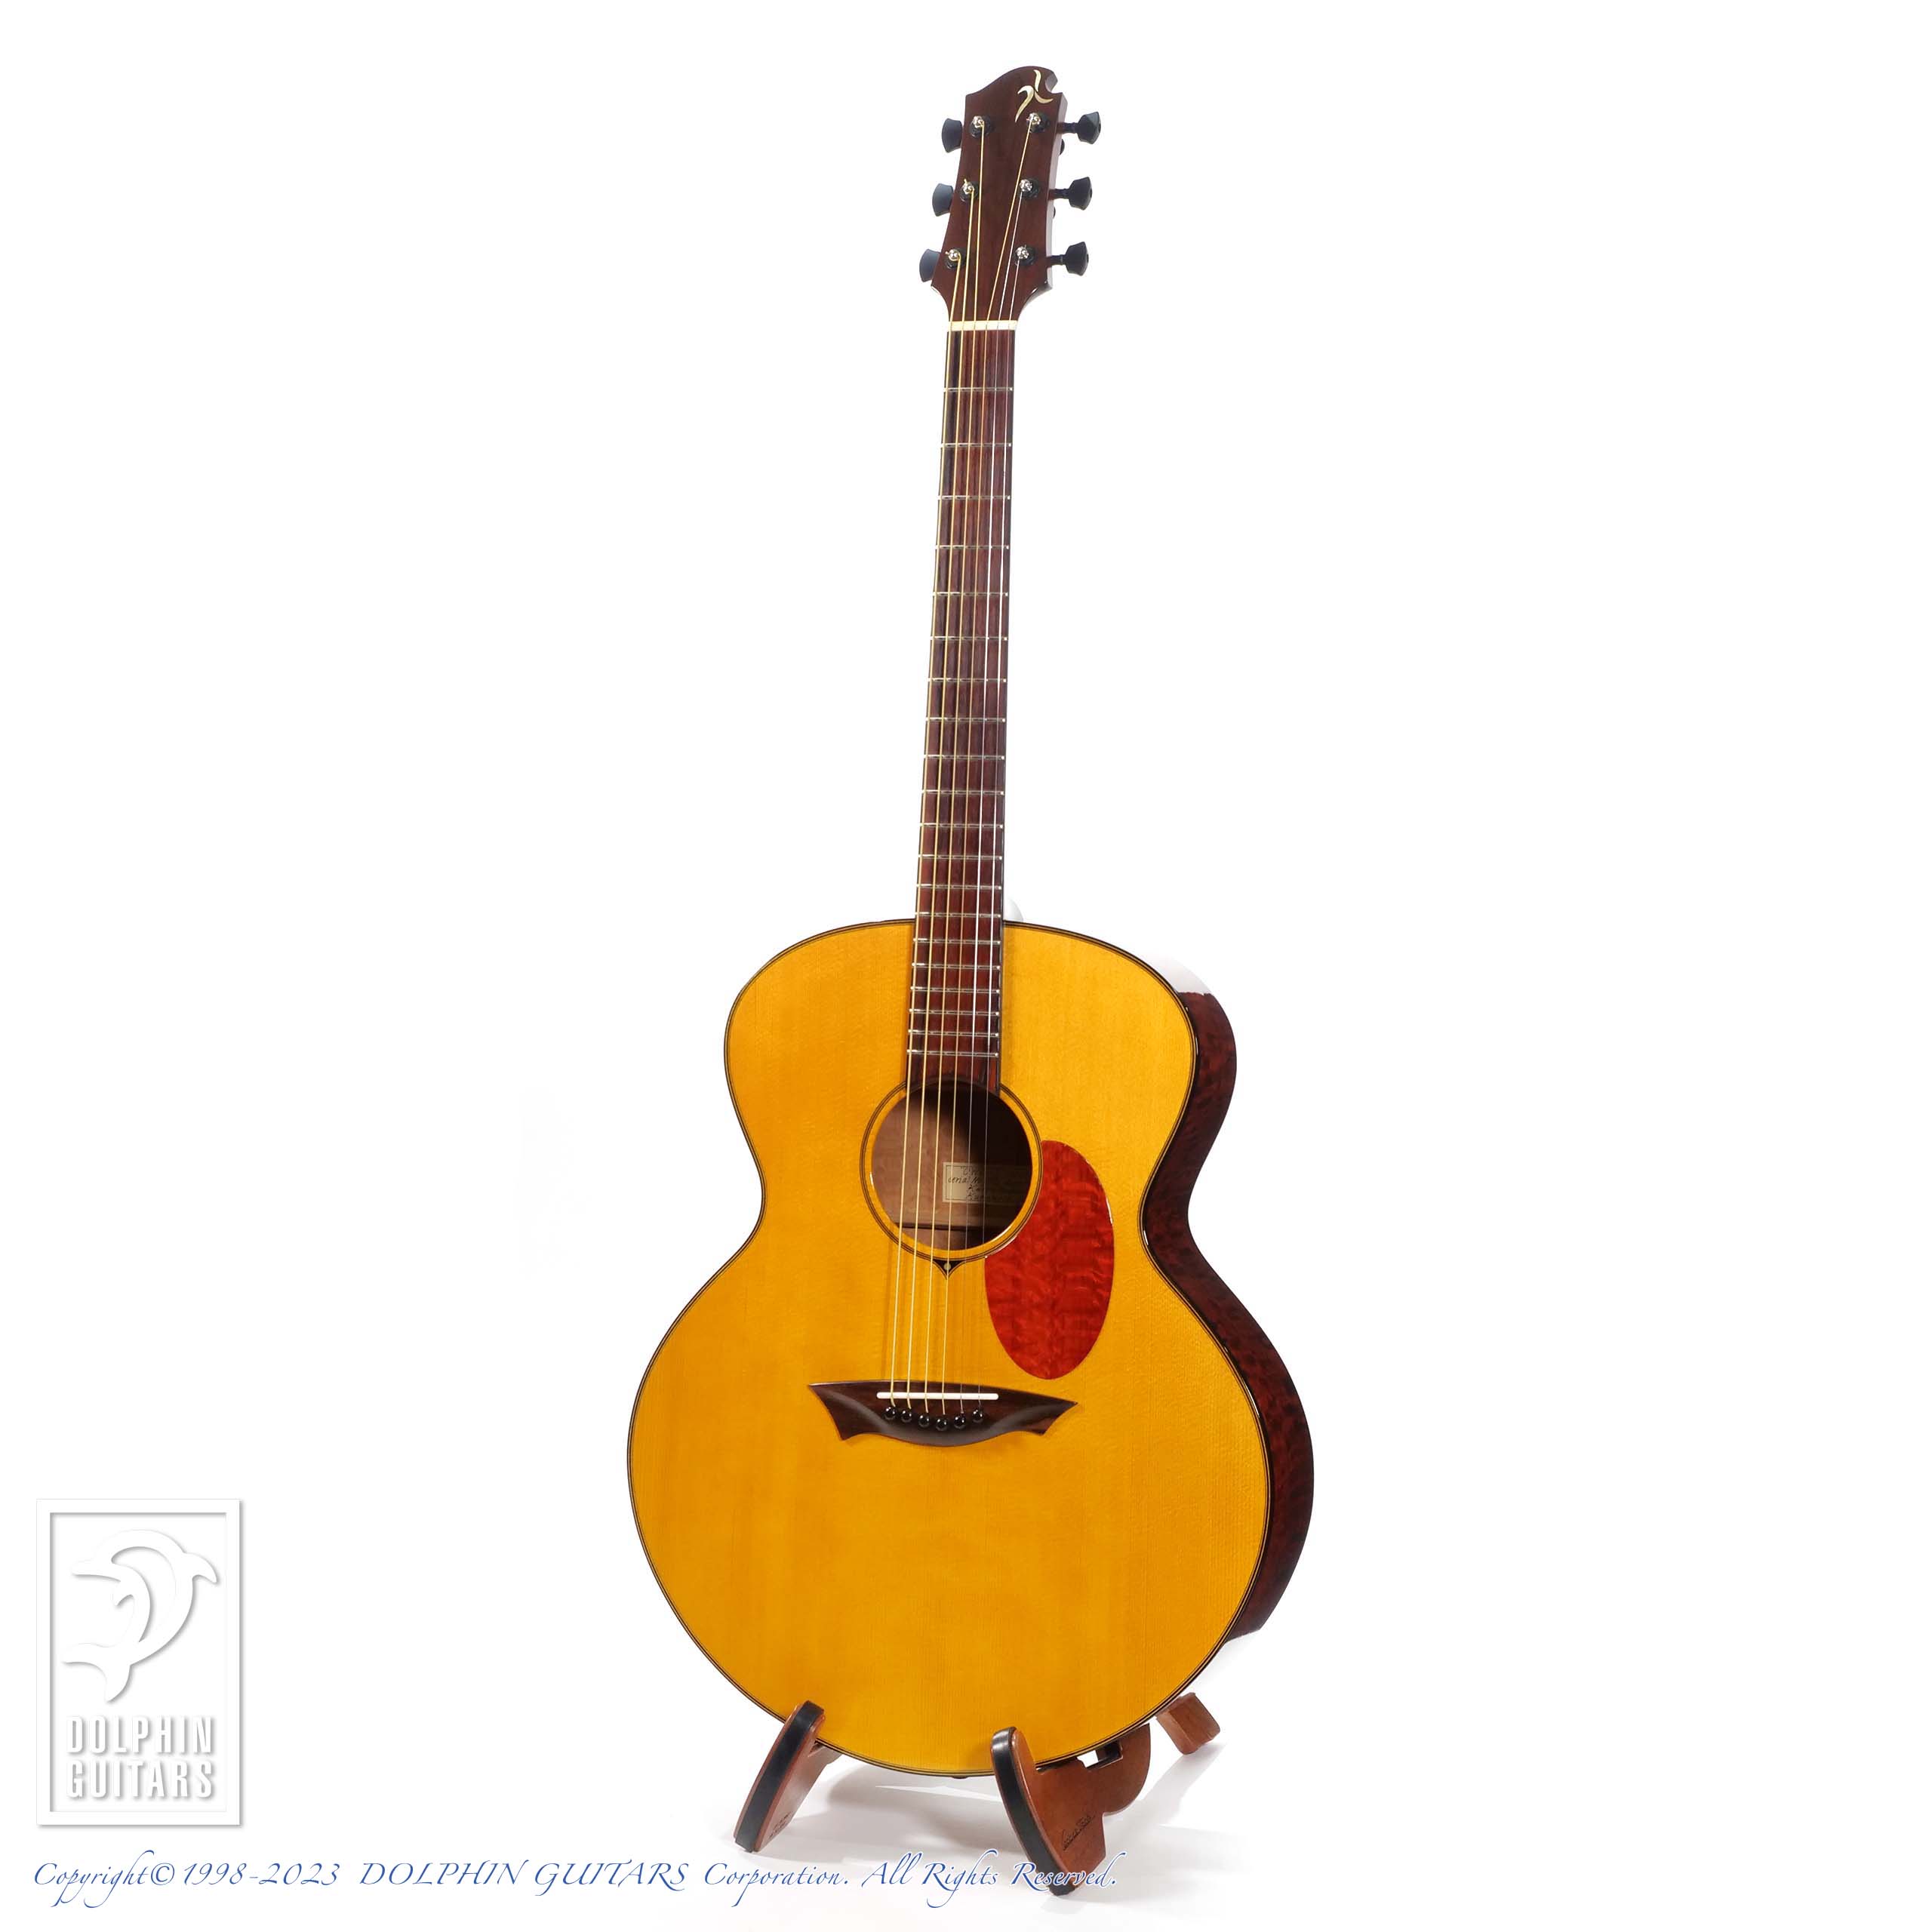 クレセントムーンギター フィンガリング巨匠らのおすみつきギター トーンウッド工房製造 ハンドメイドギター - 楽器、器材